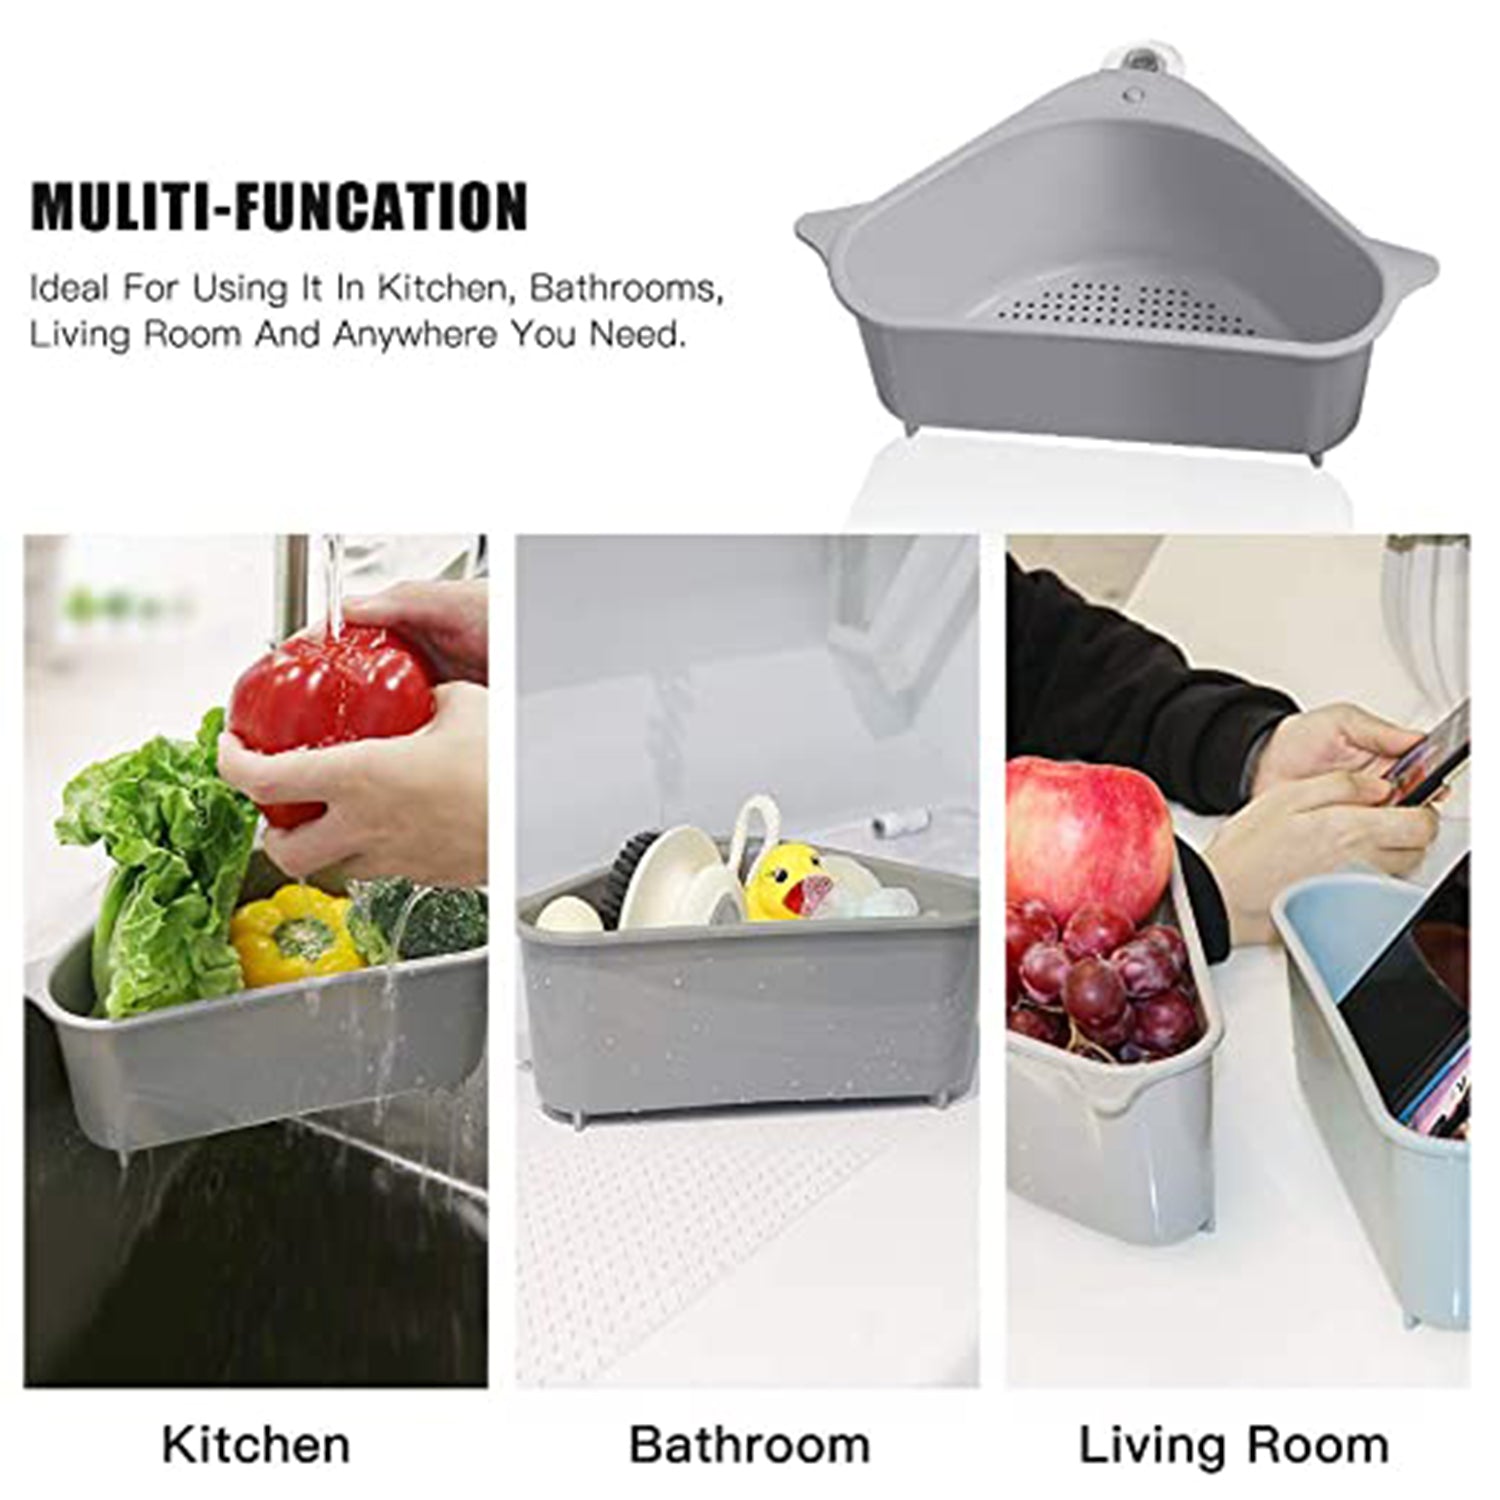 2071 Multipurpose Triangular Shape Sink Storage Basket Washing Vegetables, Fruits (Grey) DeoDap